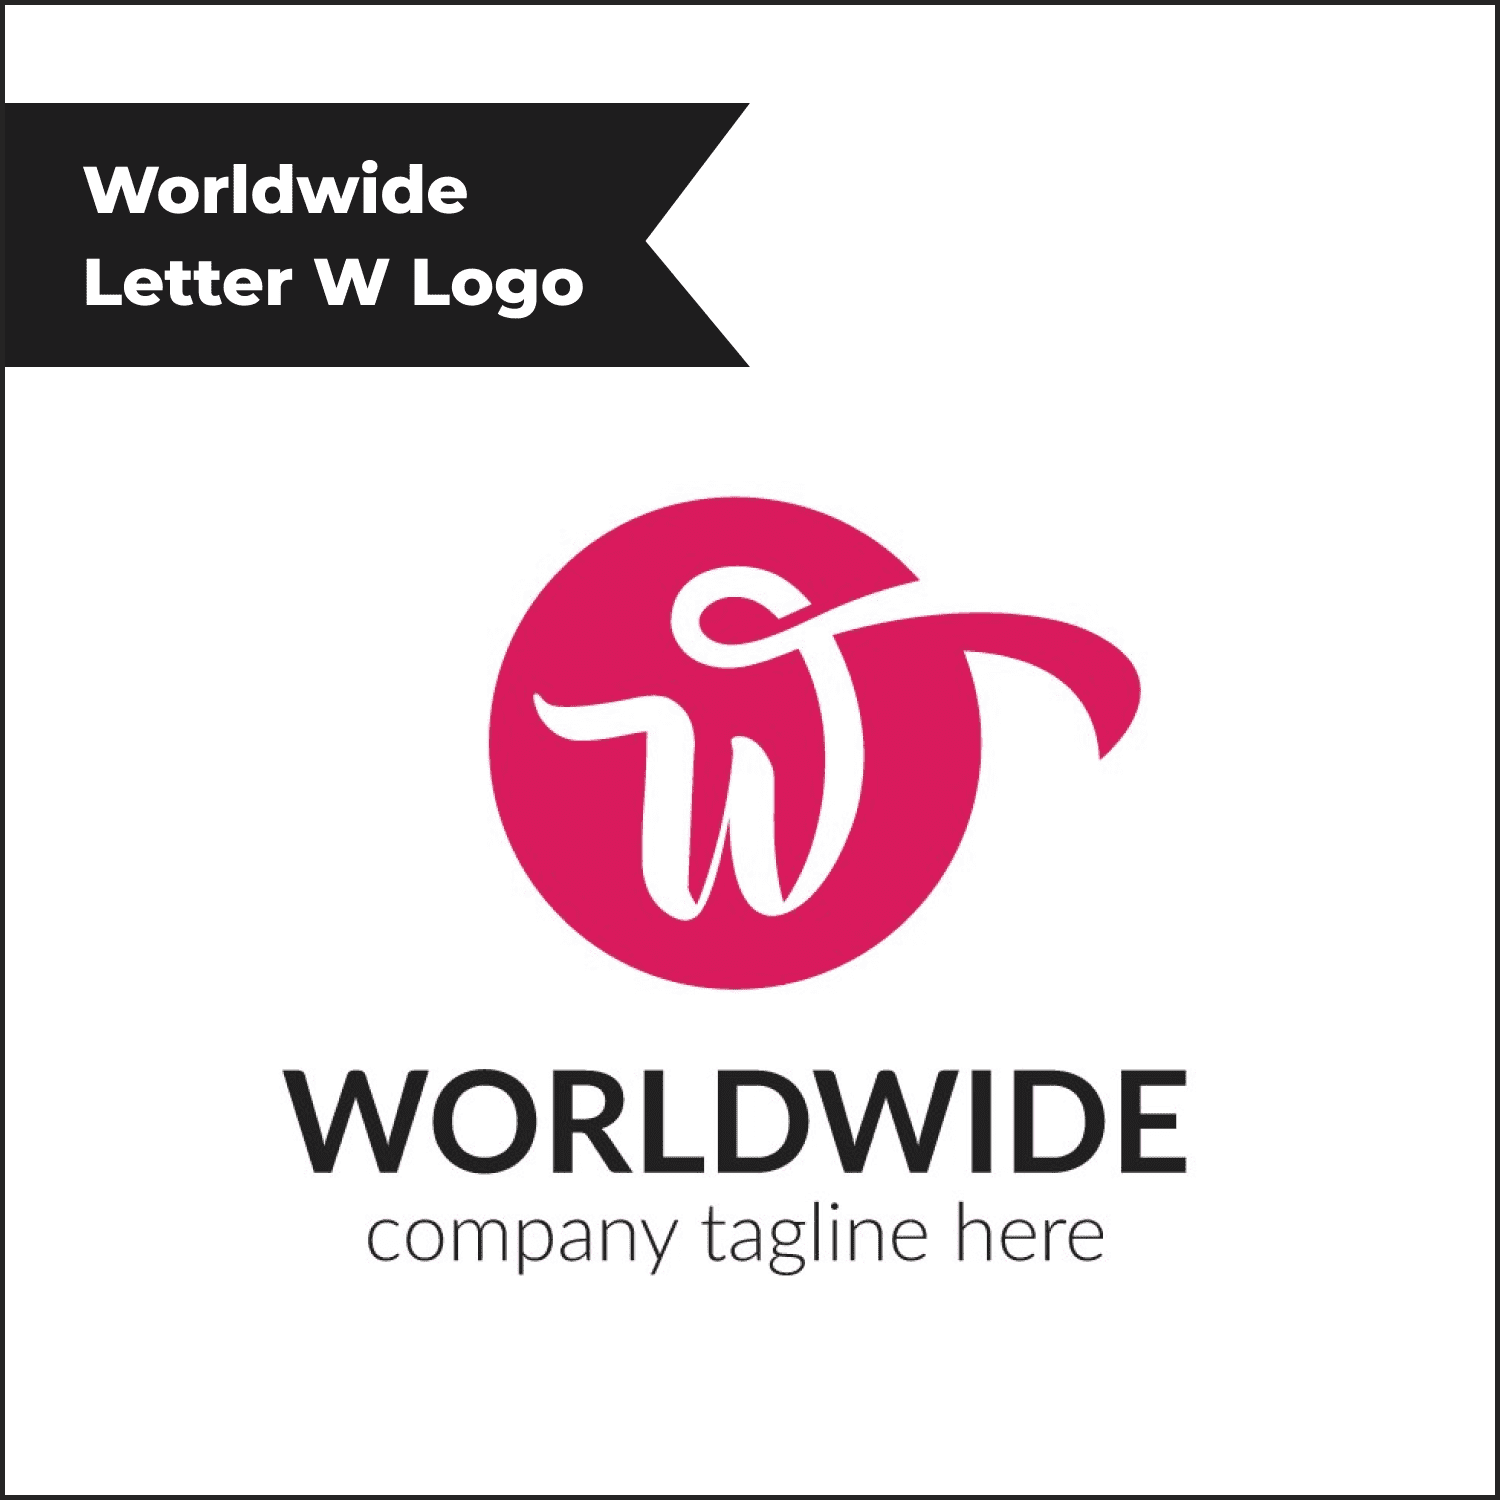 Worldwide Letter W Logo.